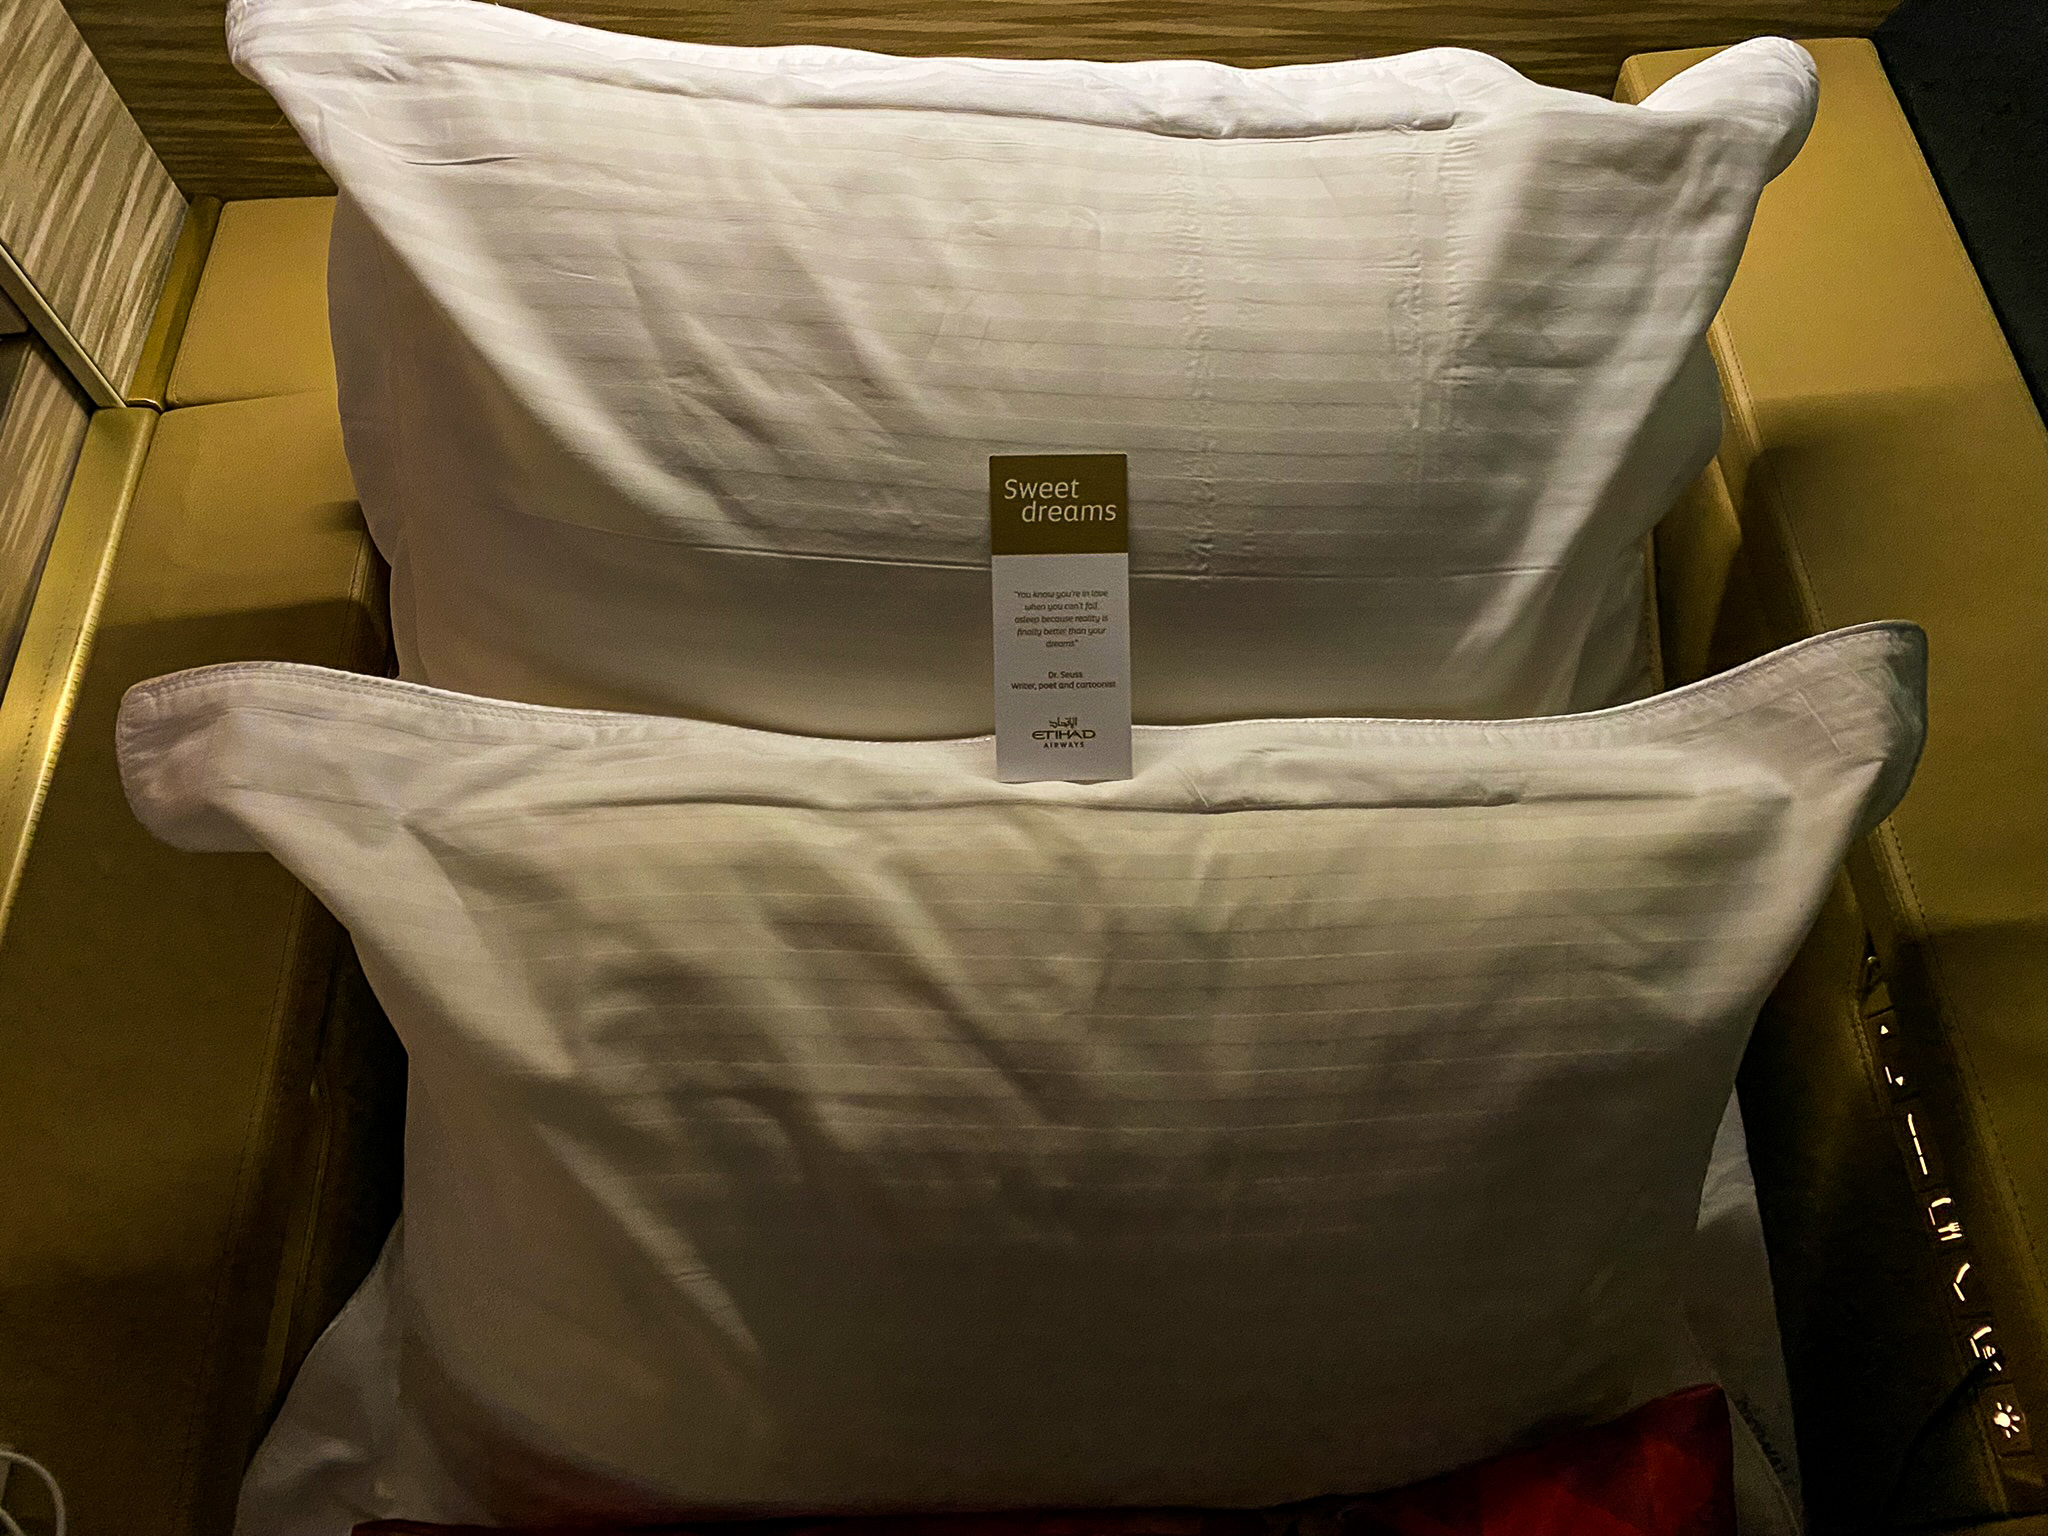 Etihad first class pillows